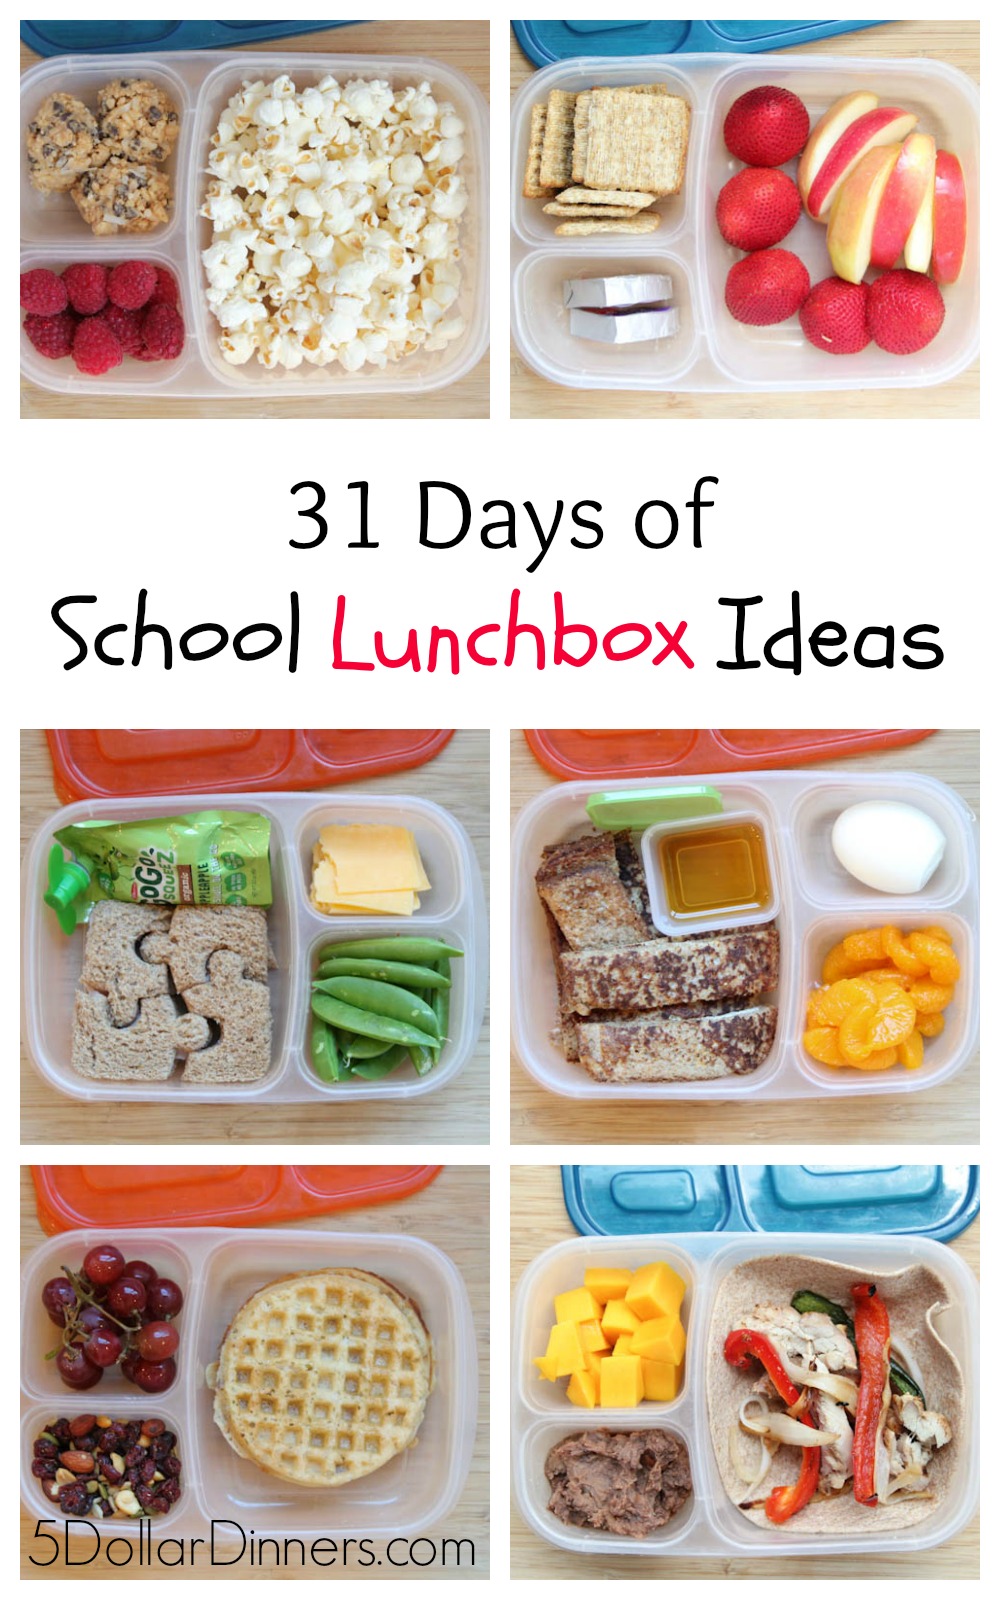 31 Days of School Lunchbox Ideas | 5DollarDinners.com